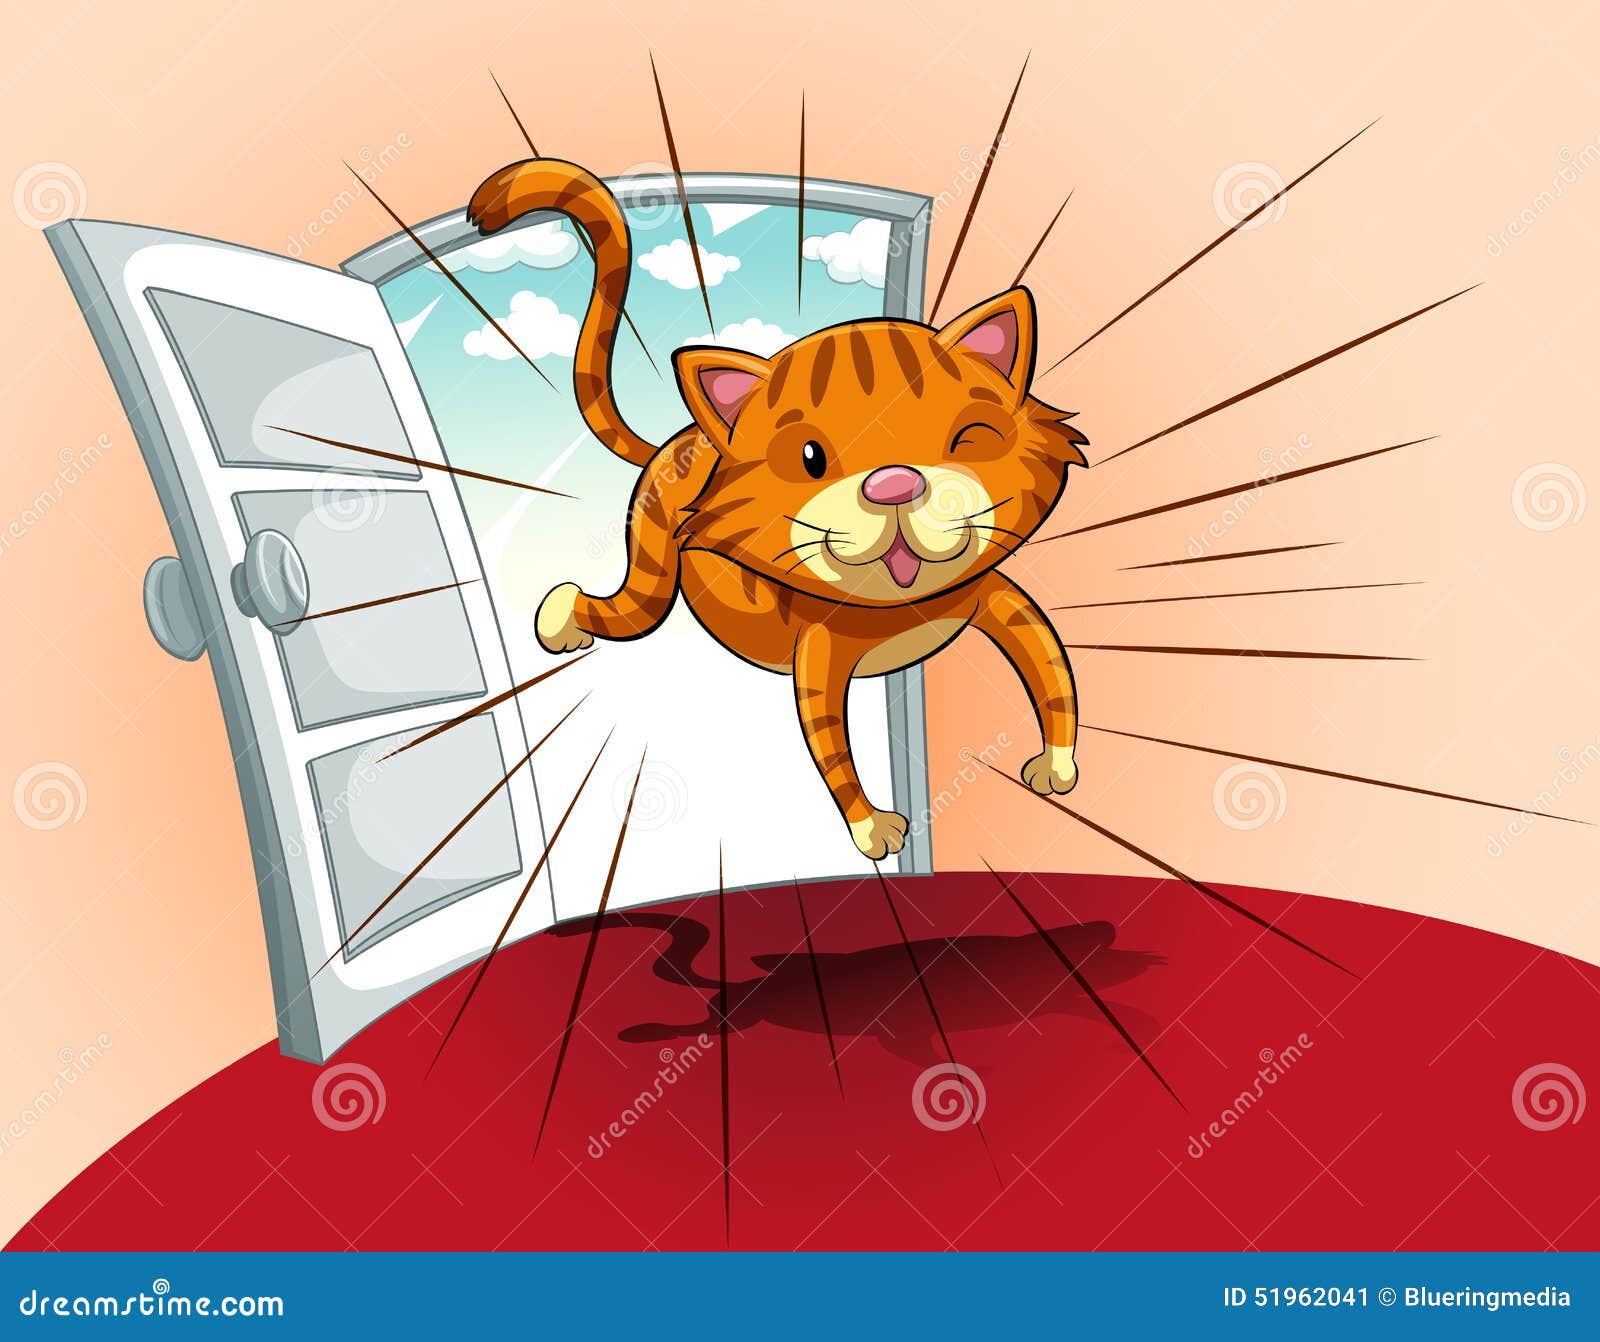 Cat running stock vector. Illustration of jumping, cute - 51962041